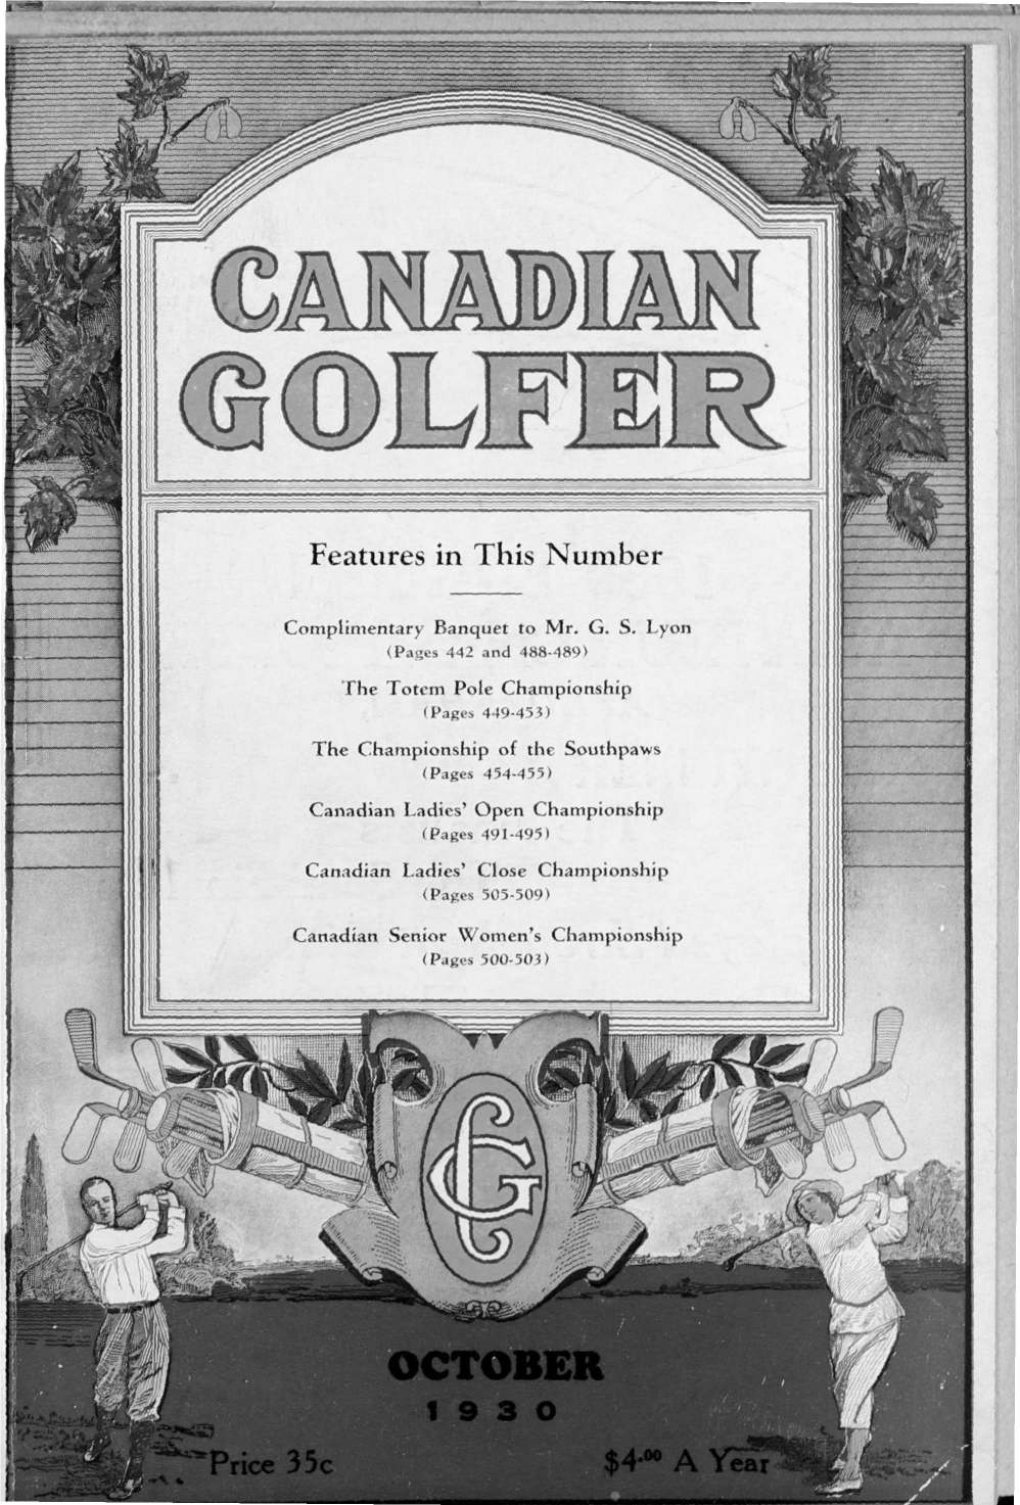 Canadian Golfer, October, 1930